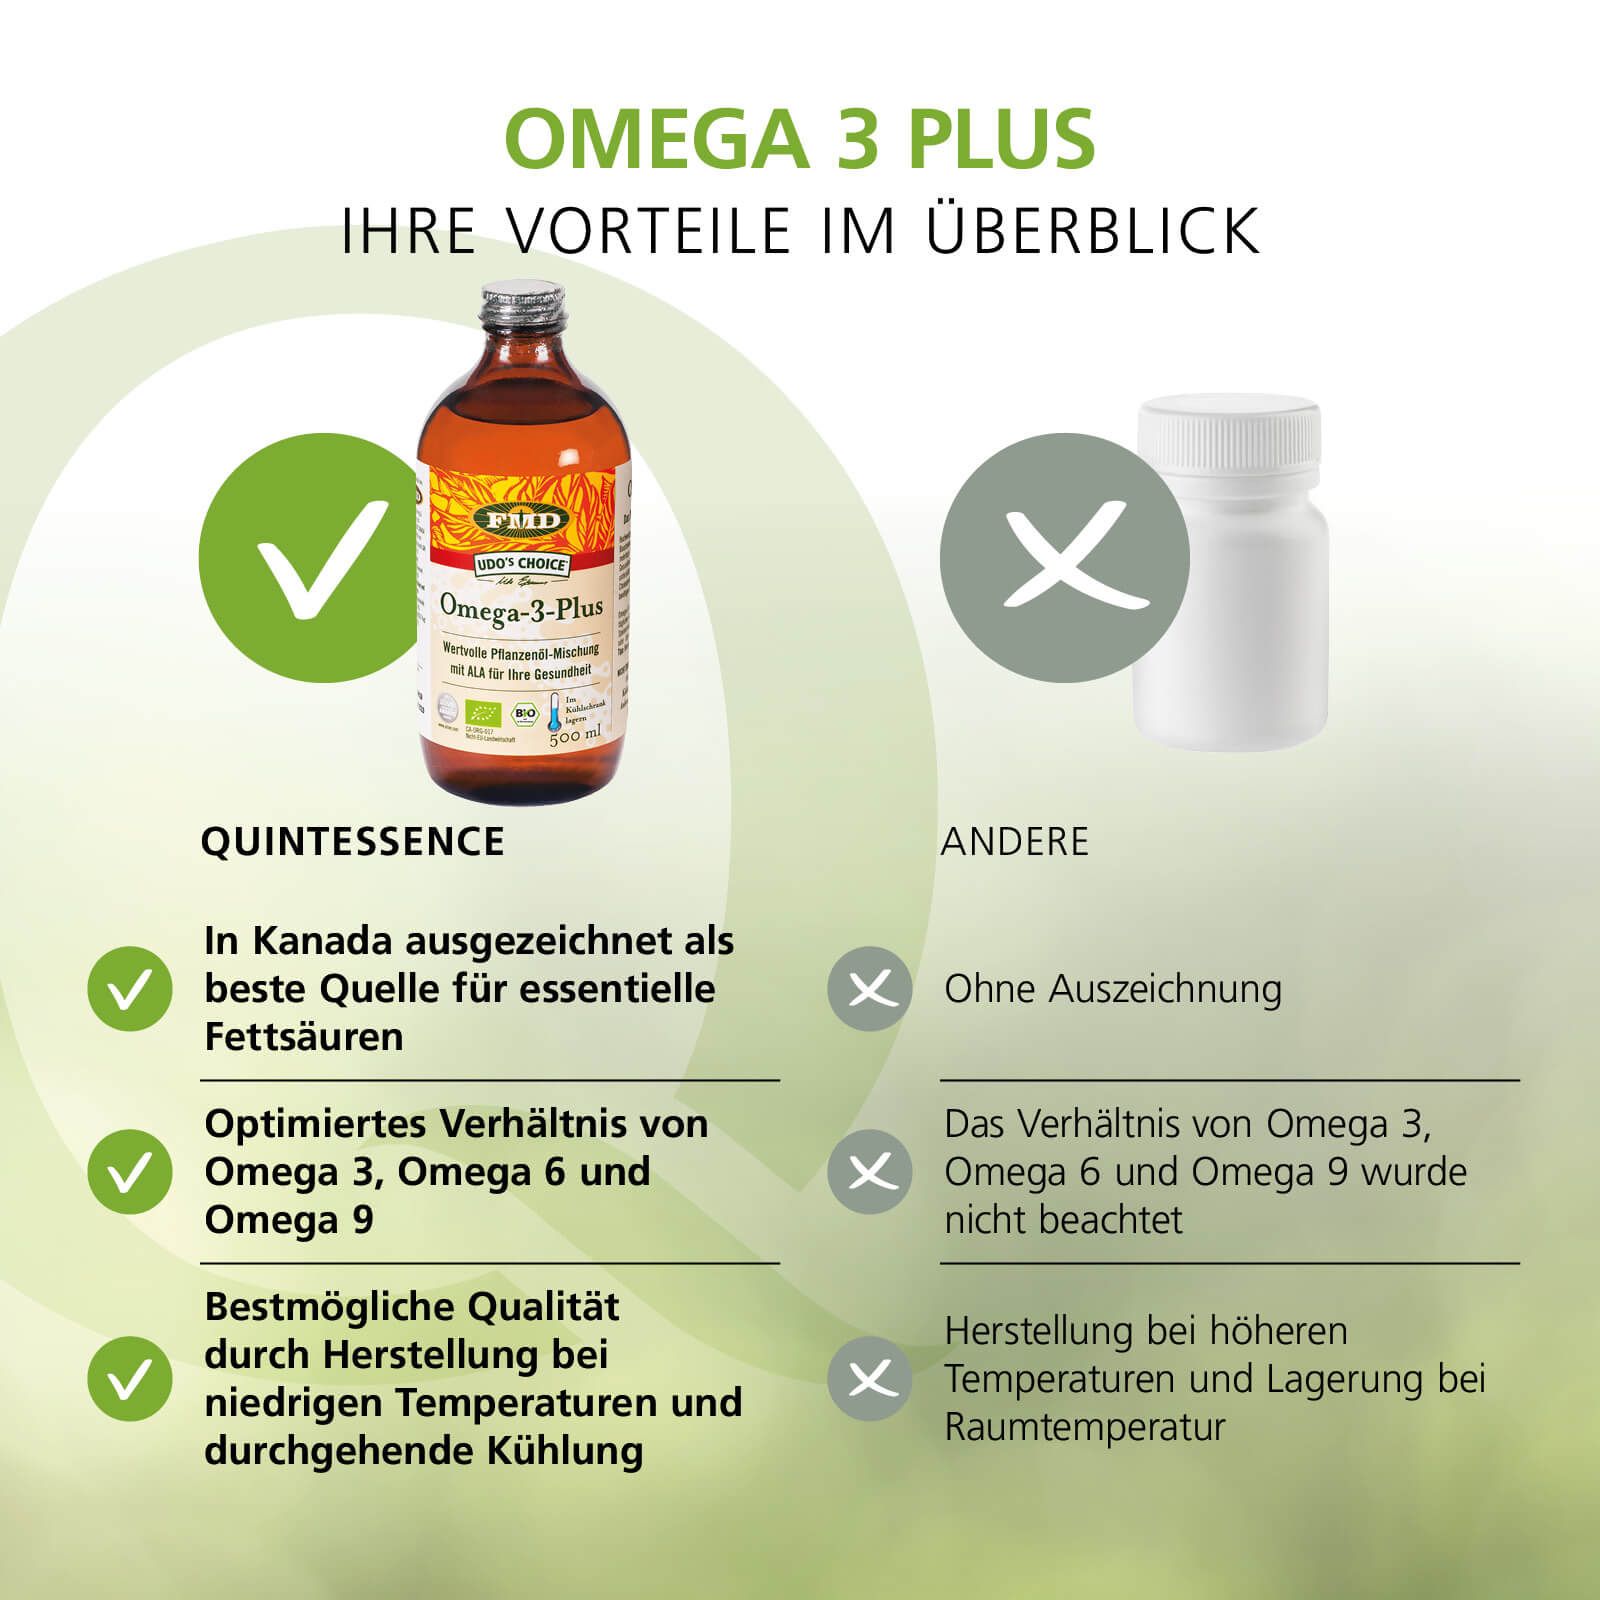 Omega-3-Plus Öl in Bioqualität von FMD